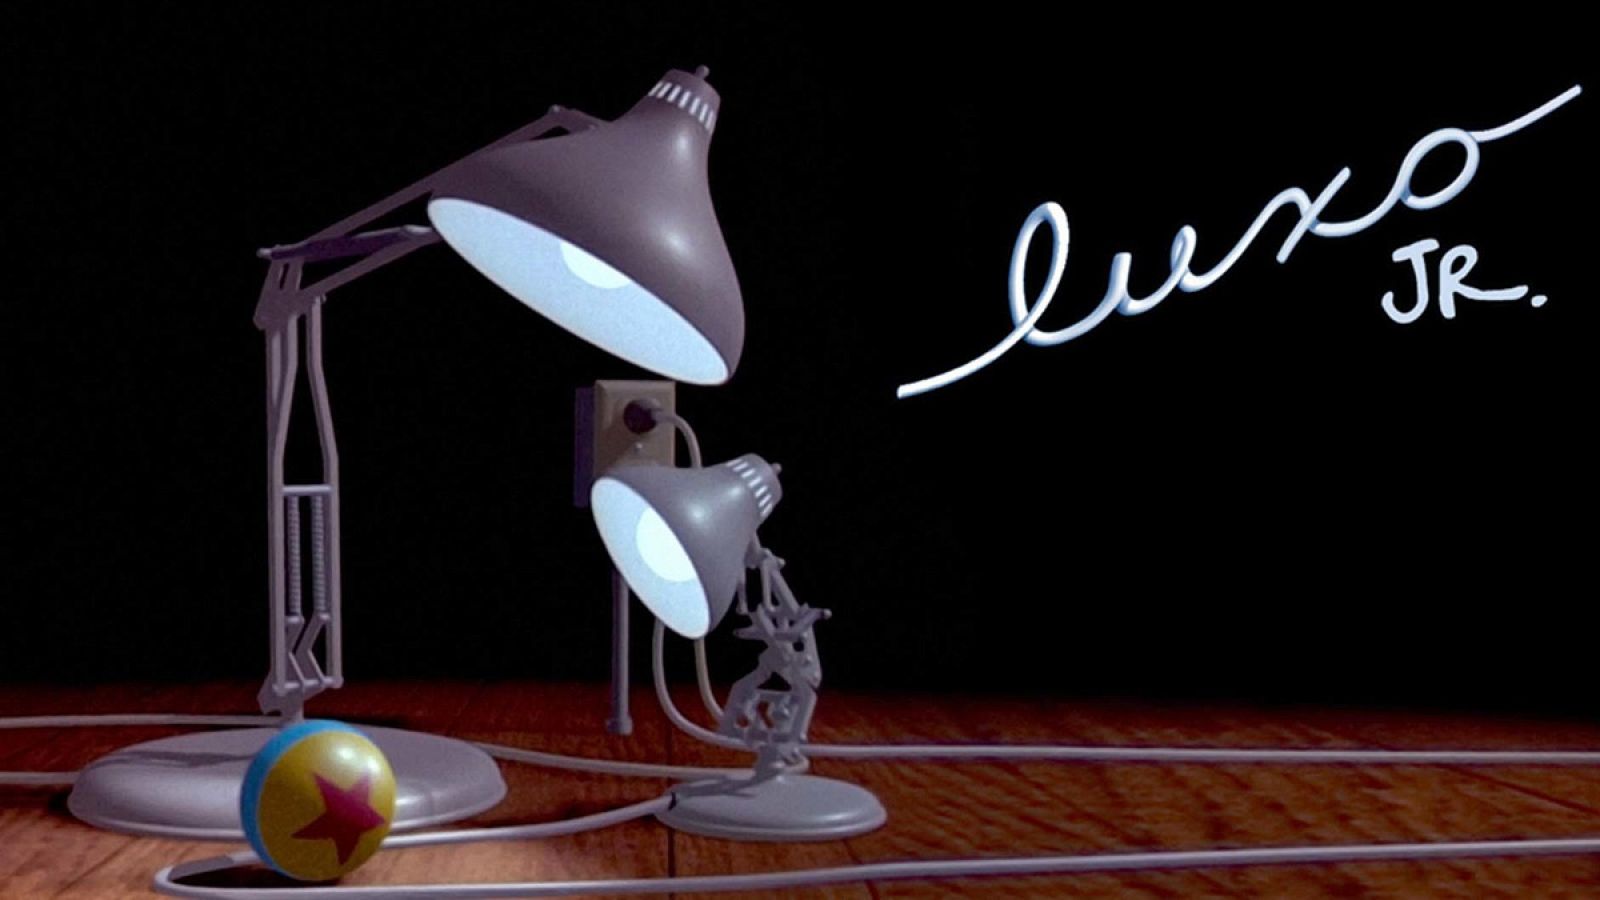 Luxo Jr. (1986), es el símbolo de Pixar